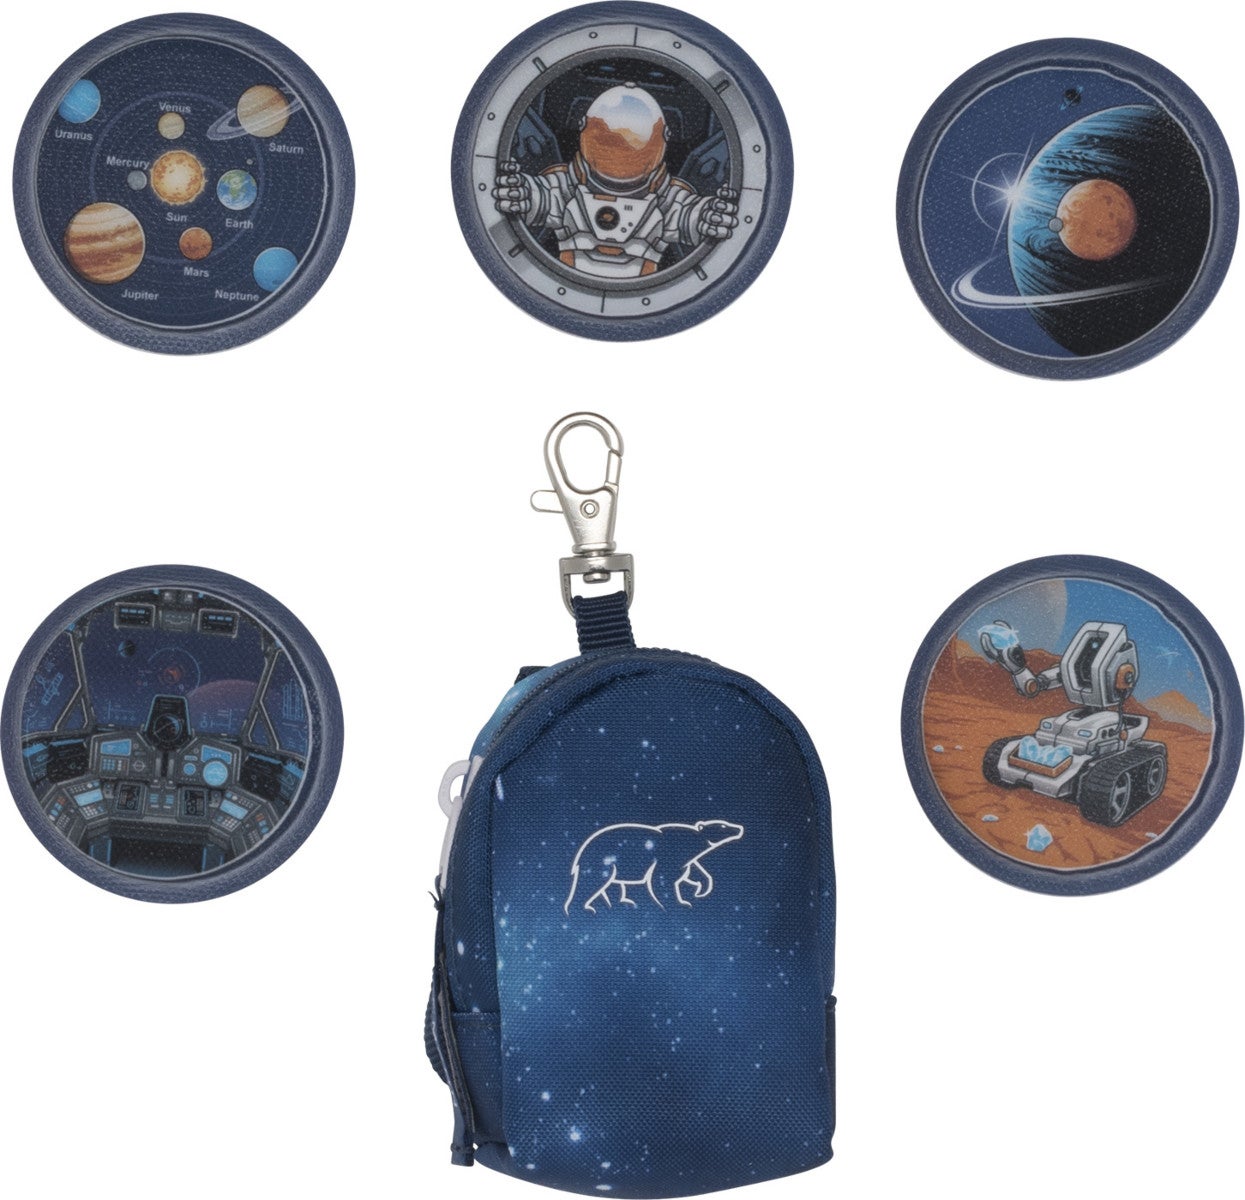 Button Bag 1.kl Space mission